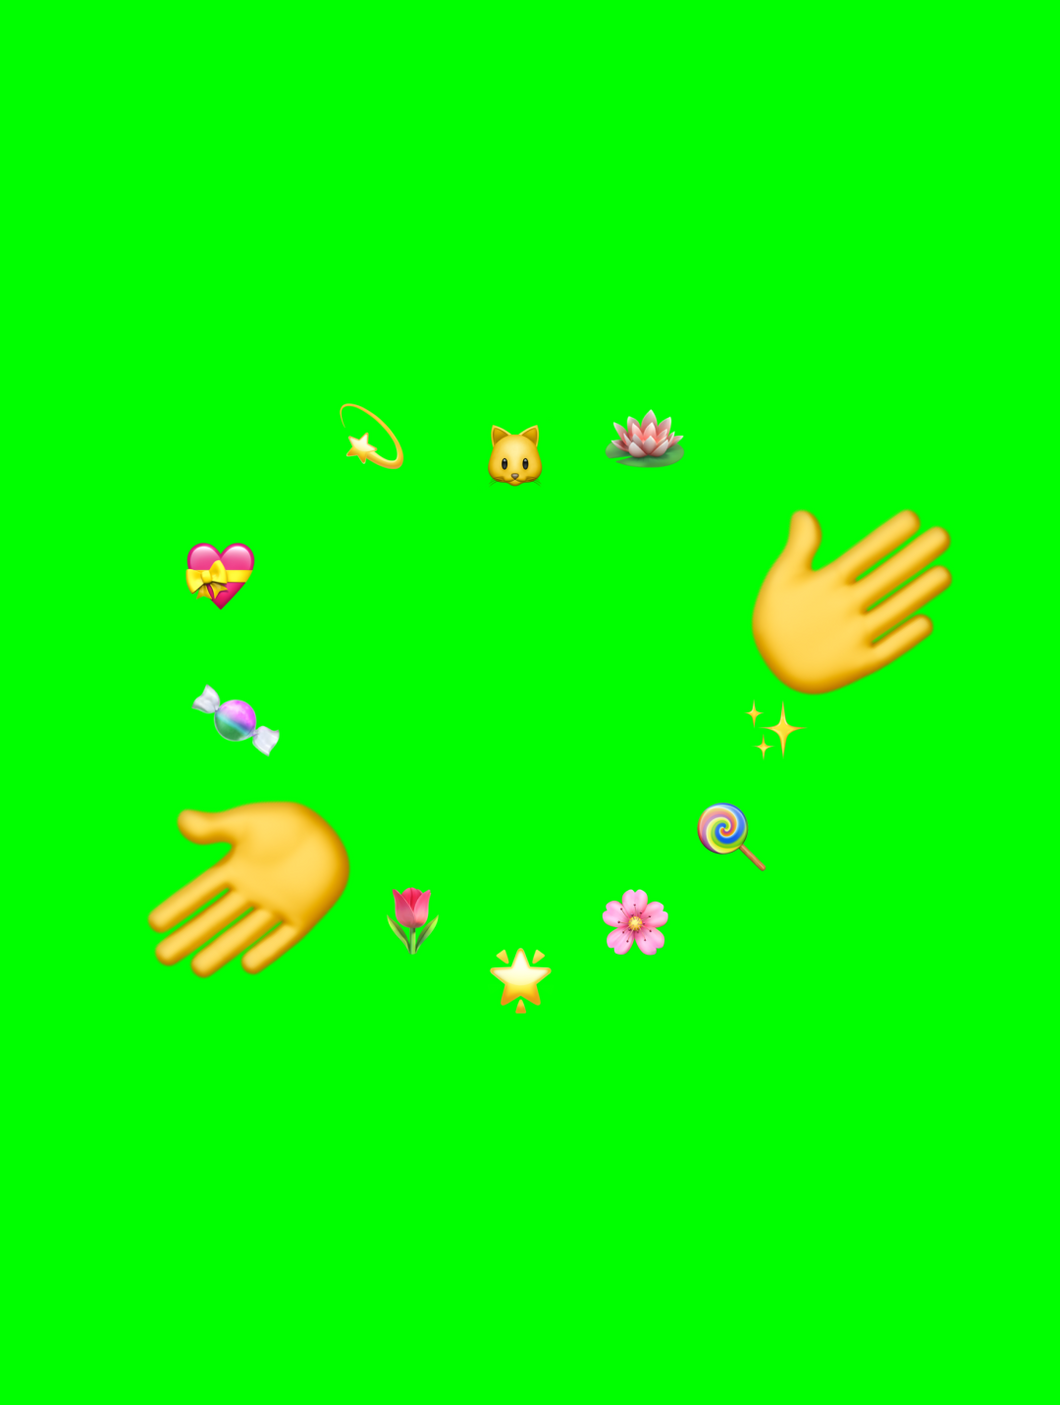 Nya Emoji TikTok Trend (Green Screen)